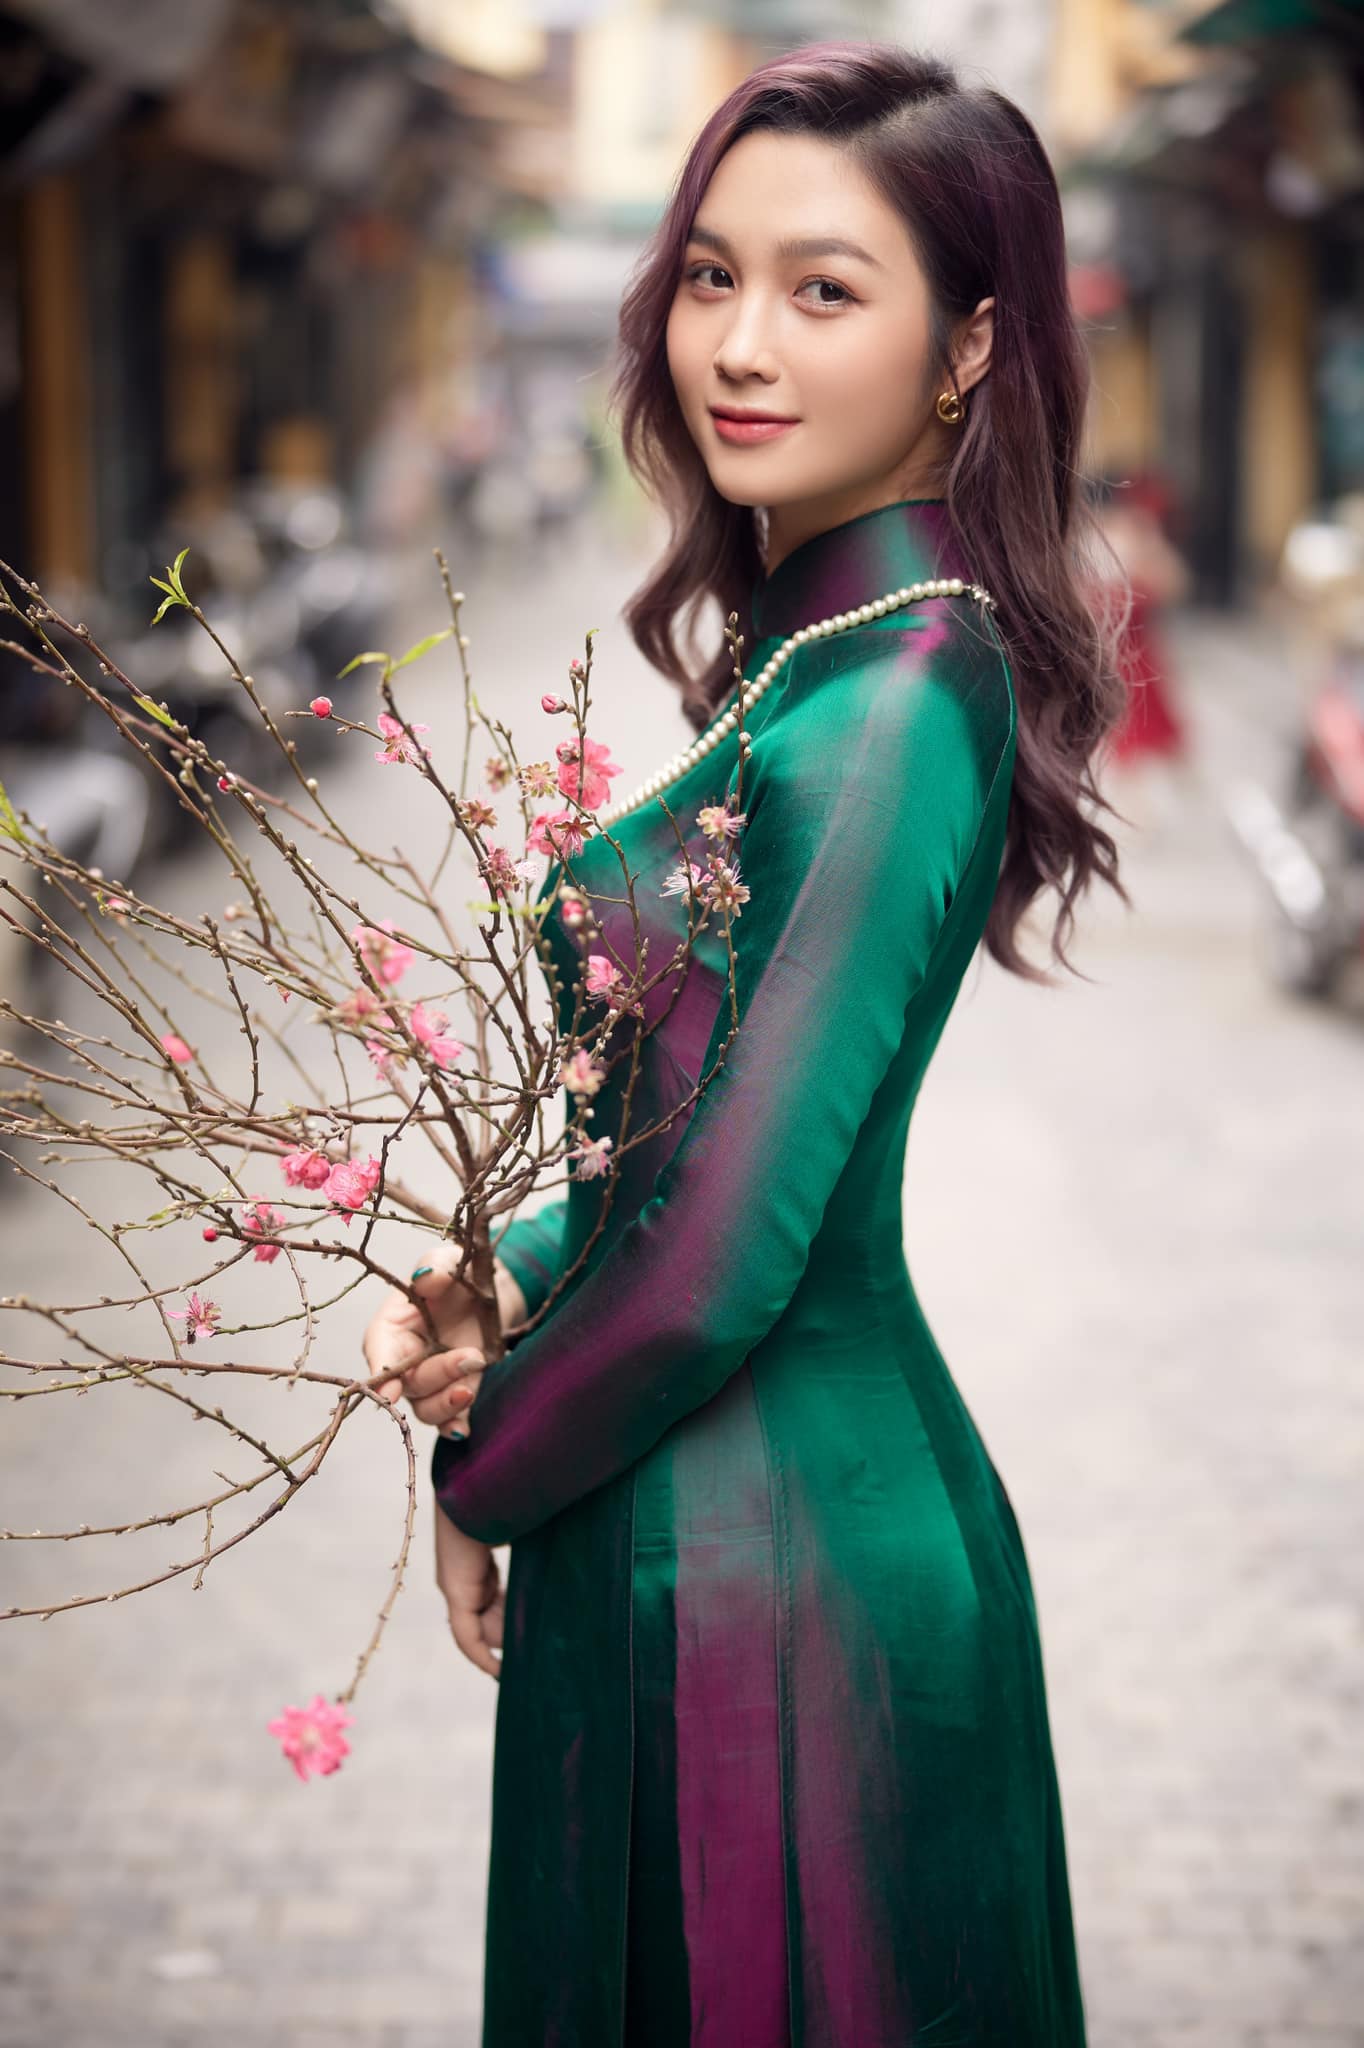 Hoa khôi Đại học Quốc gia Hà Nội duyên dáng với áo dài đón xuân - Ảnh 8.